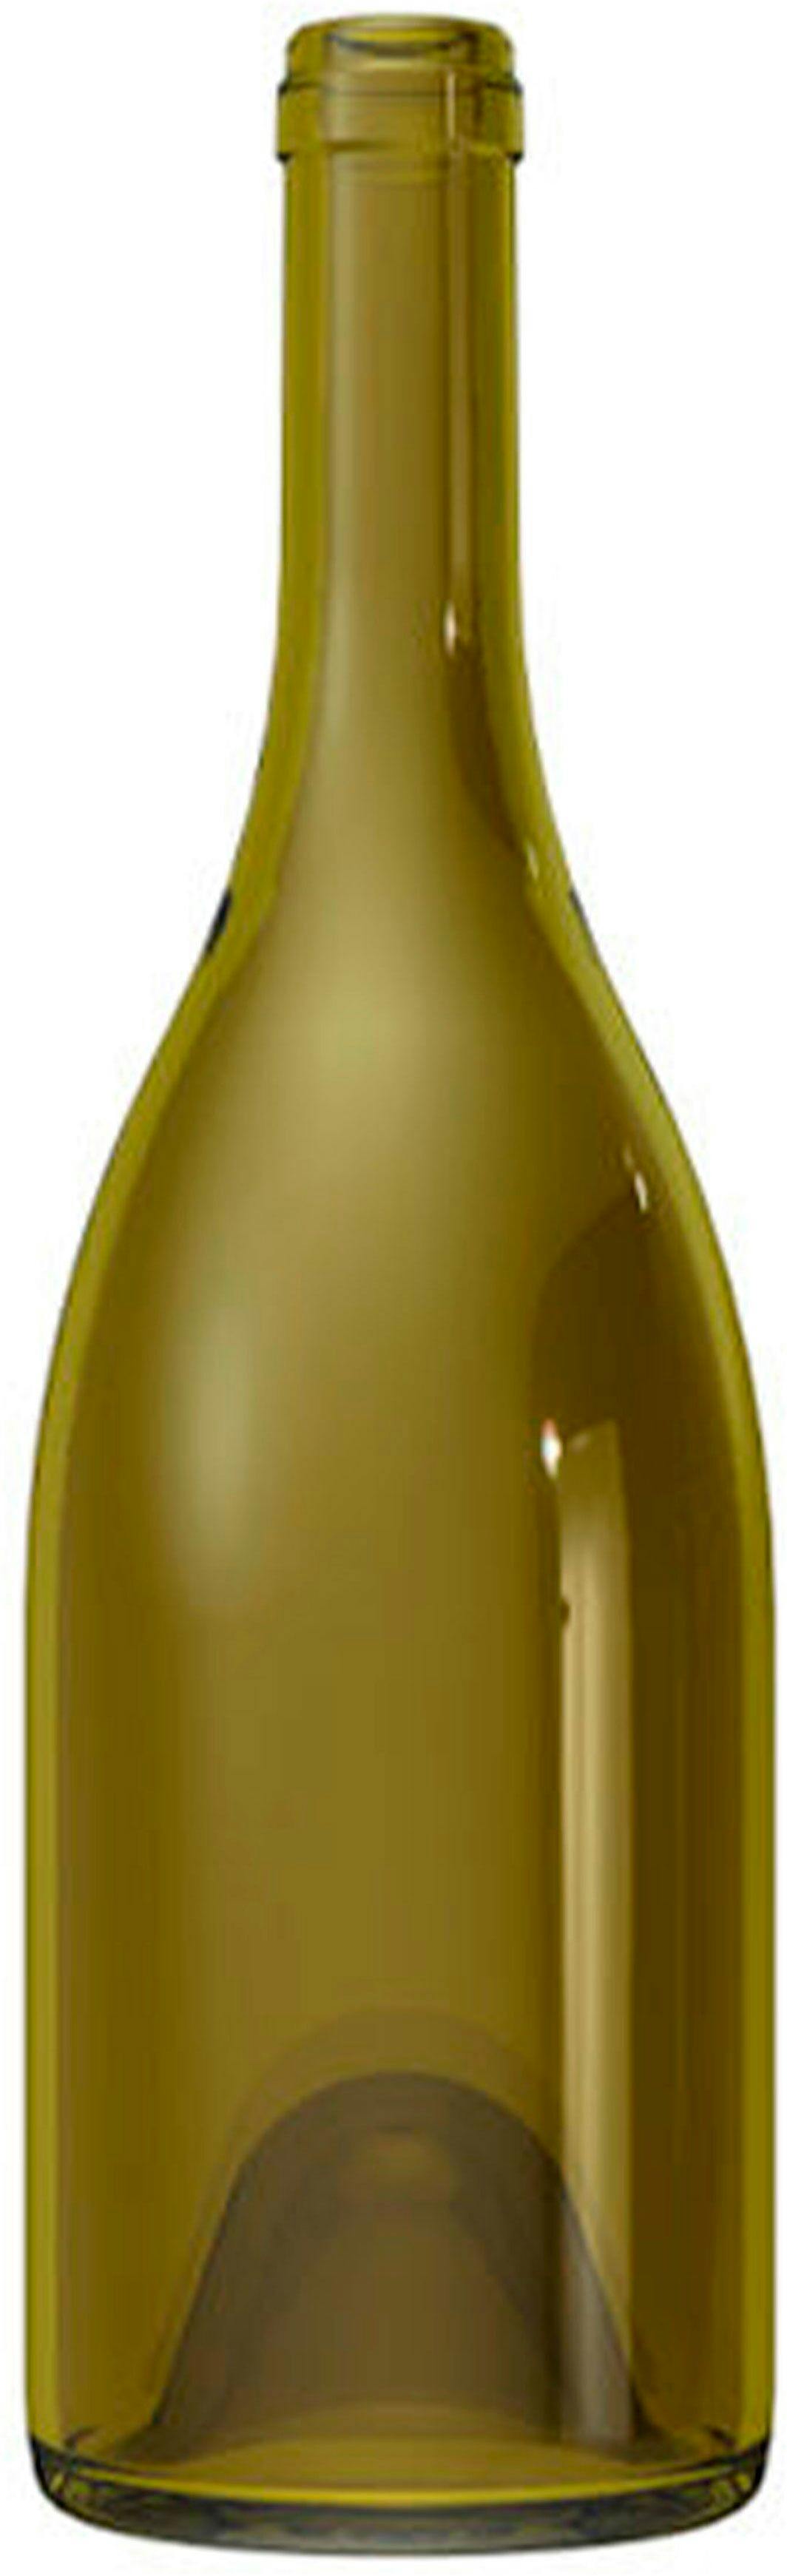 Bouteille Bourgogne   DUCASSE 750 ml BG-Bouchon